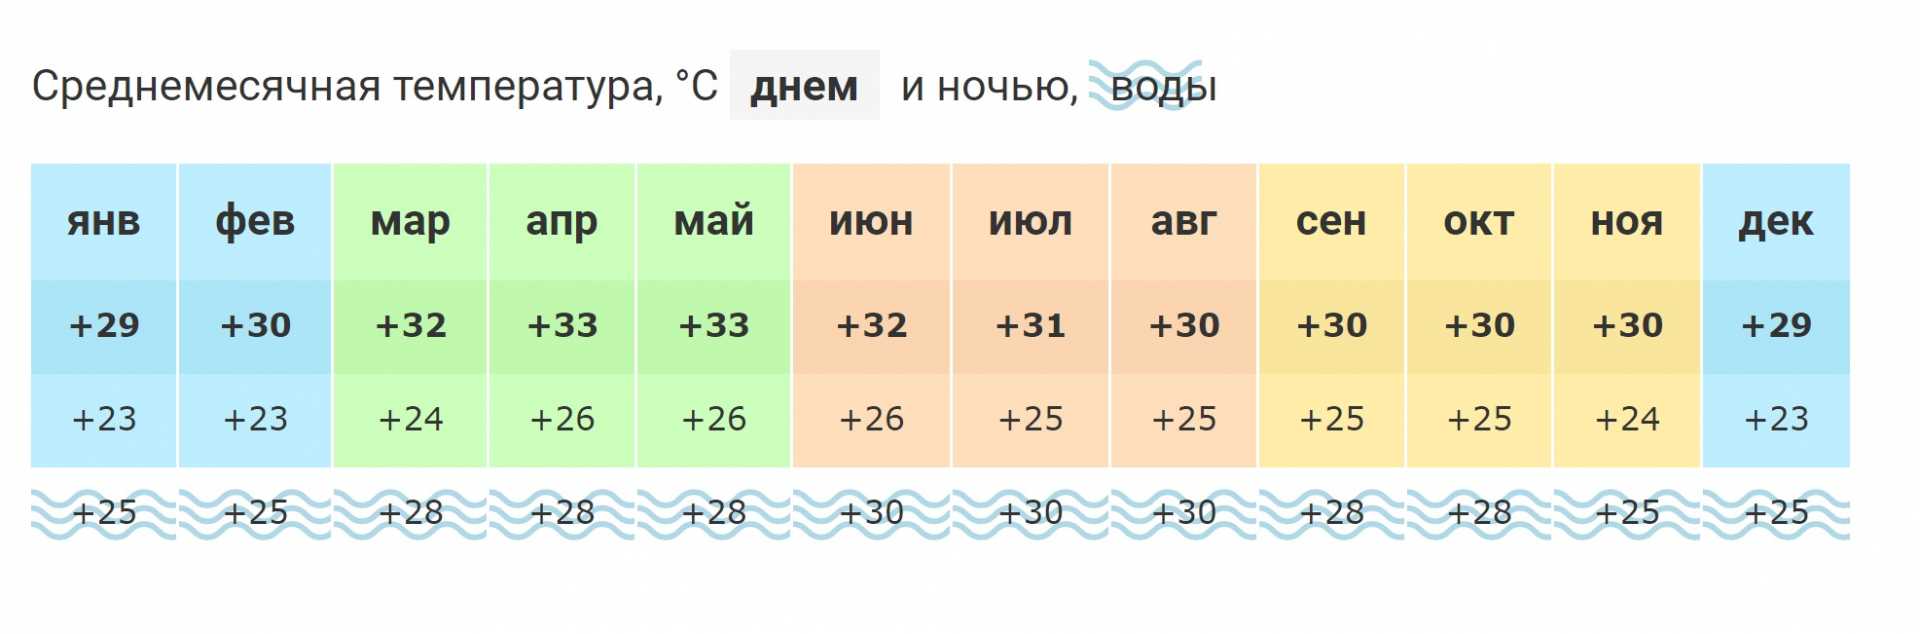 Погода тунис вода температура. Черногория климат по месяцам. Средняя температура в Черногории по месяцам. Температура в Черногории по месяцам и температура воды. Черногория температура по месяцам.